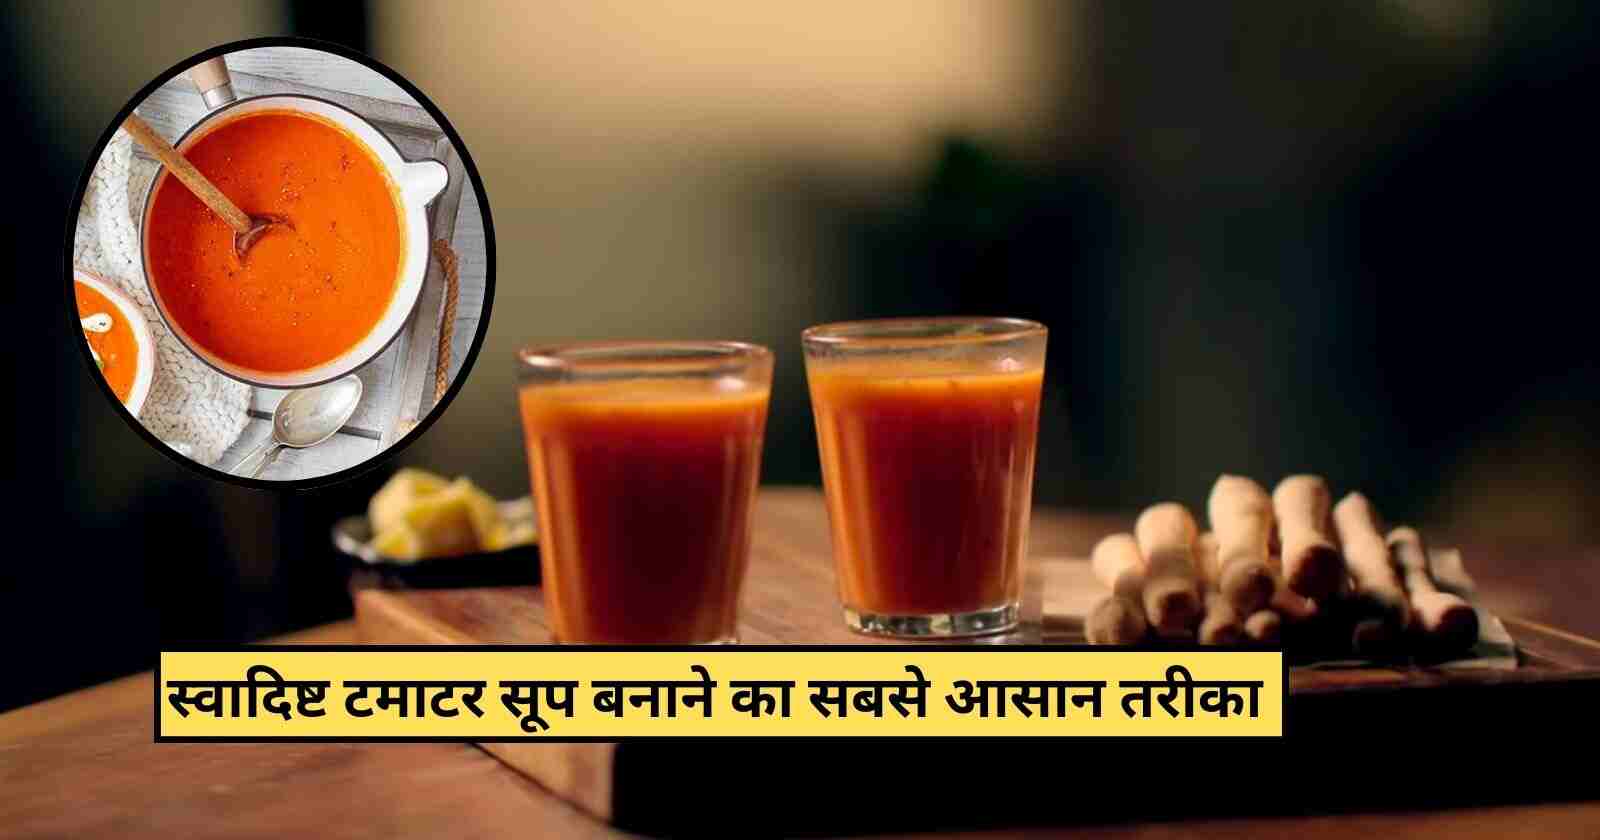 Tomato Soup Recipe In Hindi: 5 मिनिट में झटपट तैयार करें स्वादिस्ट टमाटर सूप hinditonews.in